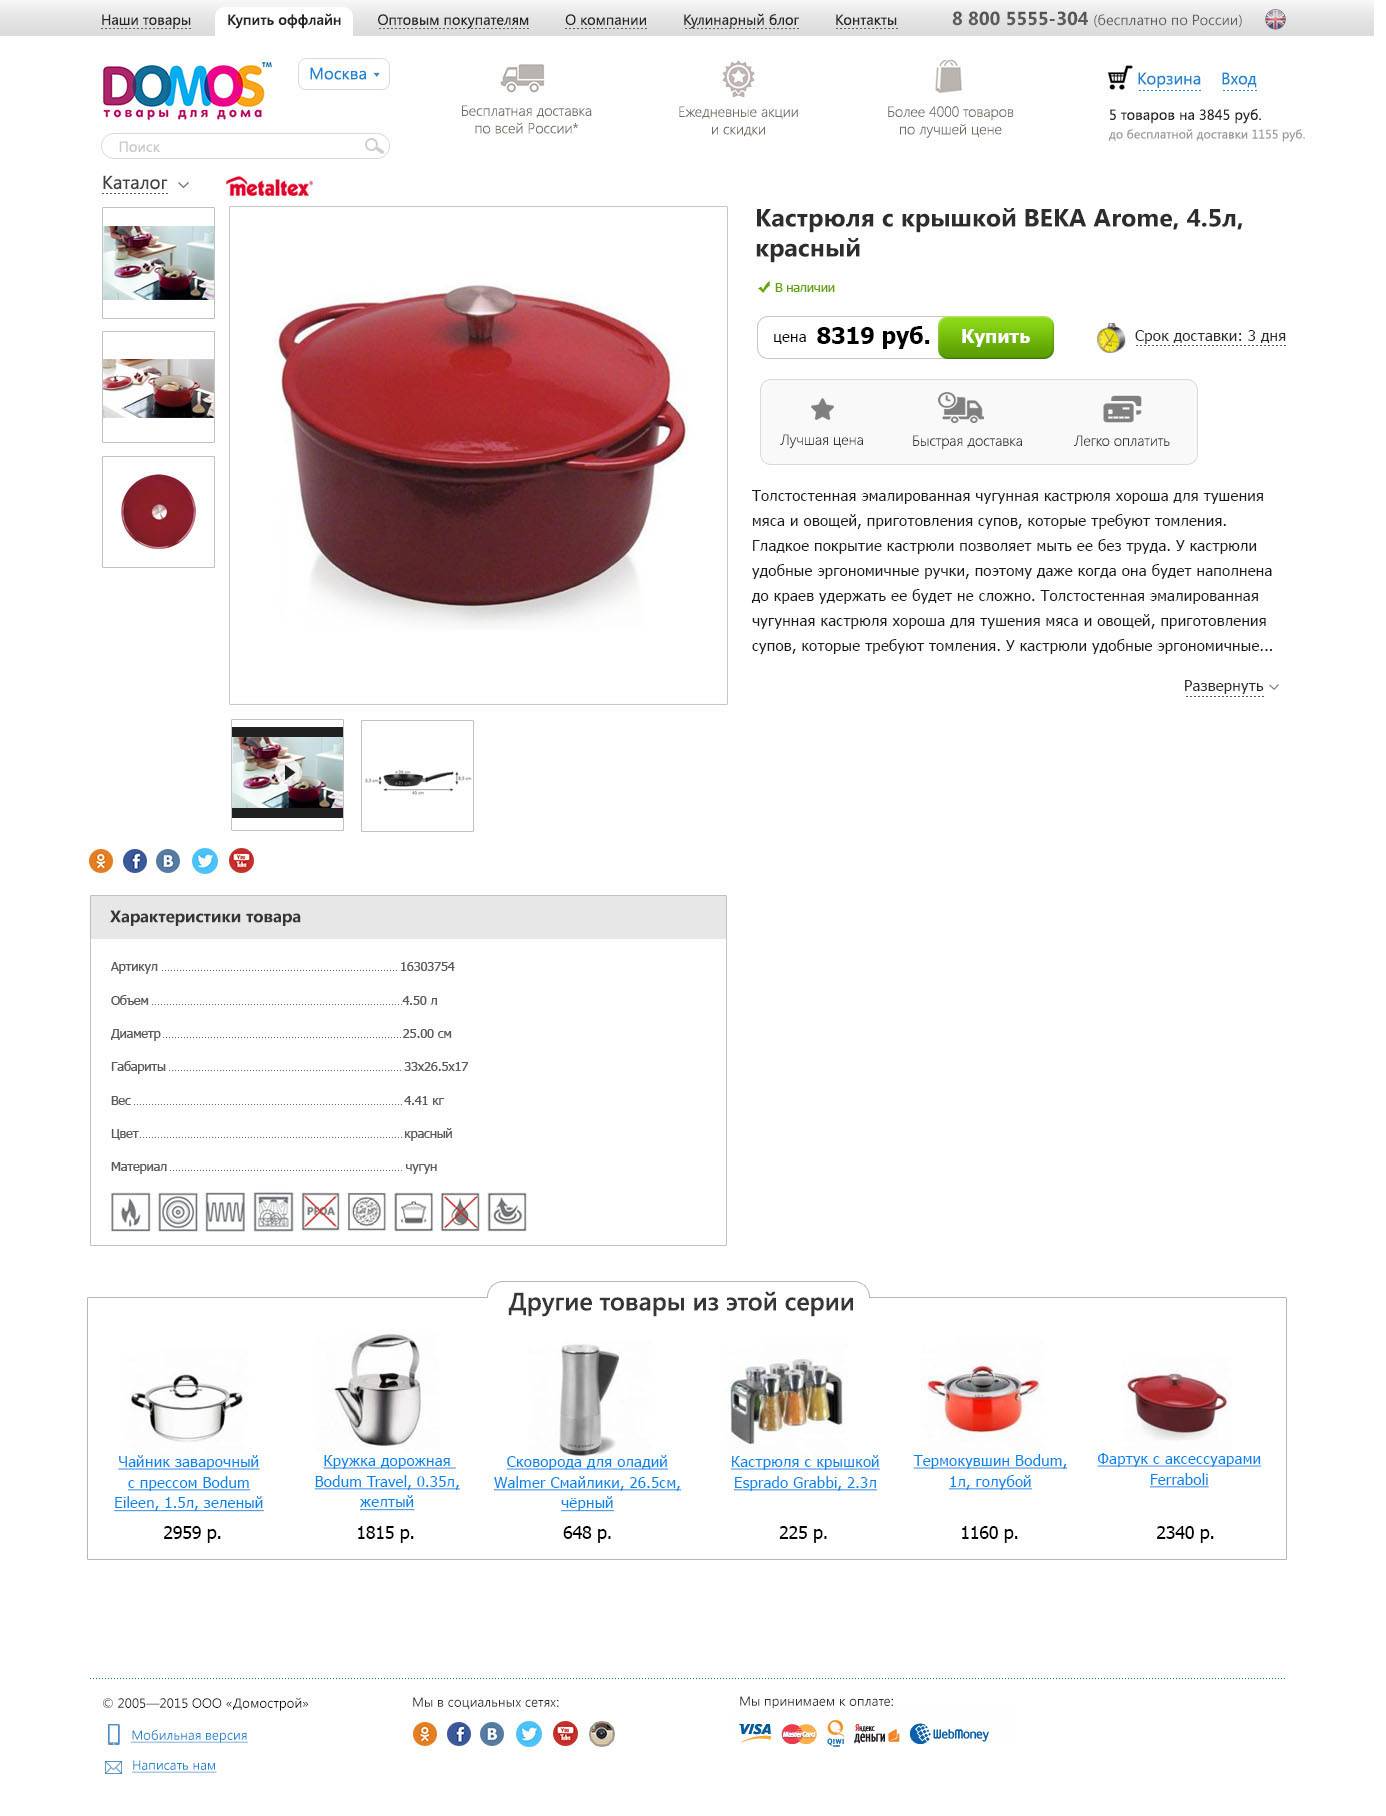 Рейтинг посуды для индукционных плит - топ 10 наборов кастрюль